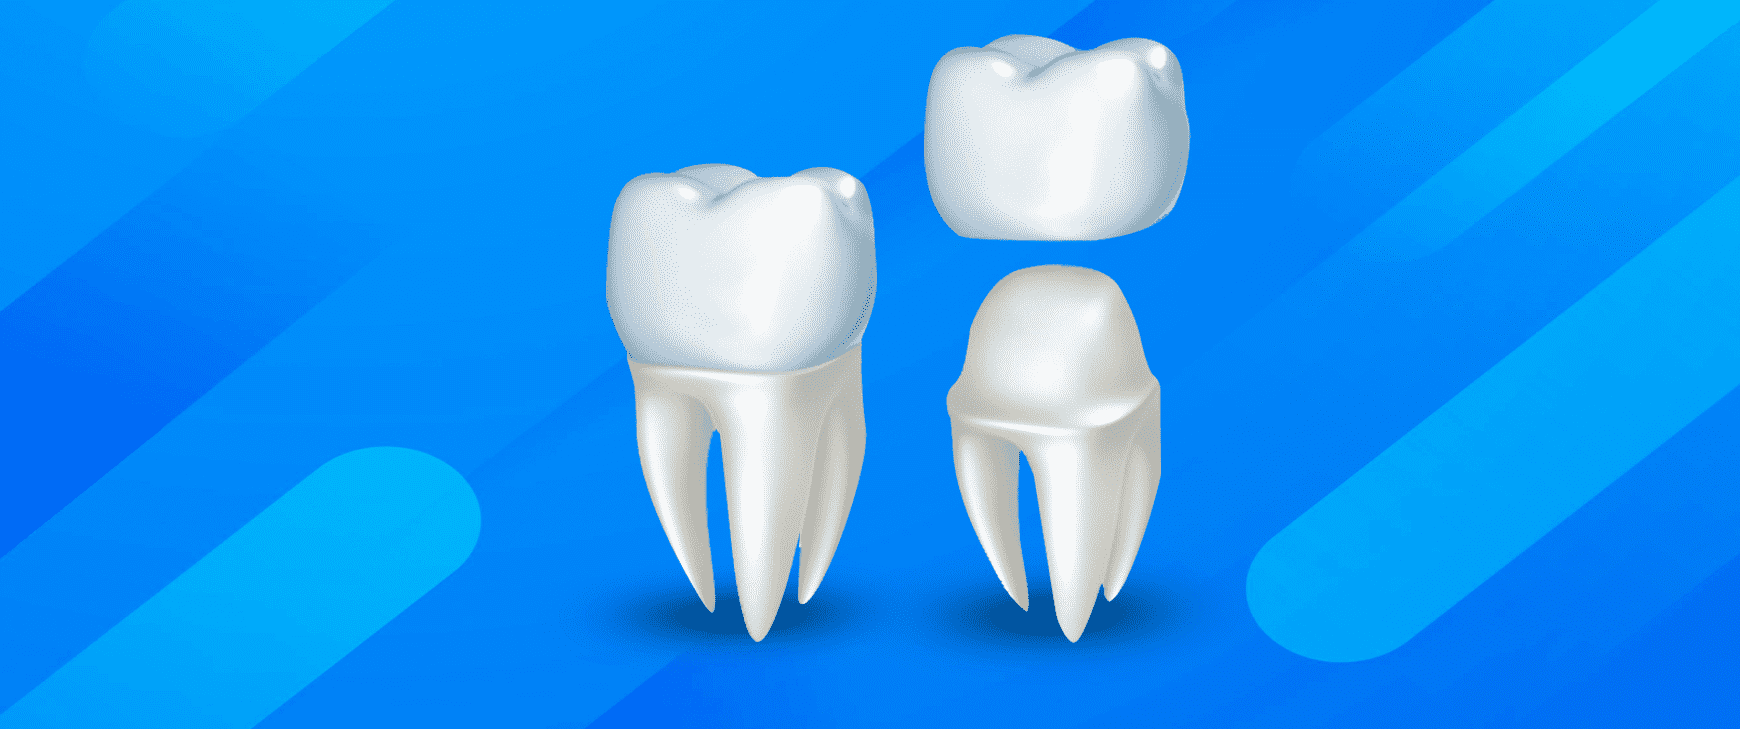 Couronne dentaire - Restauration tout céramique - Dentiste Hardricourt